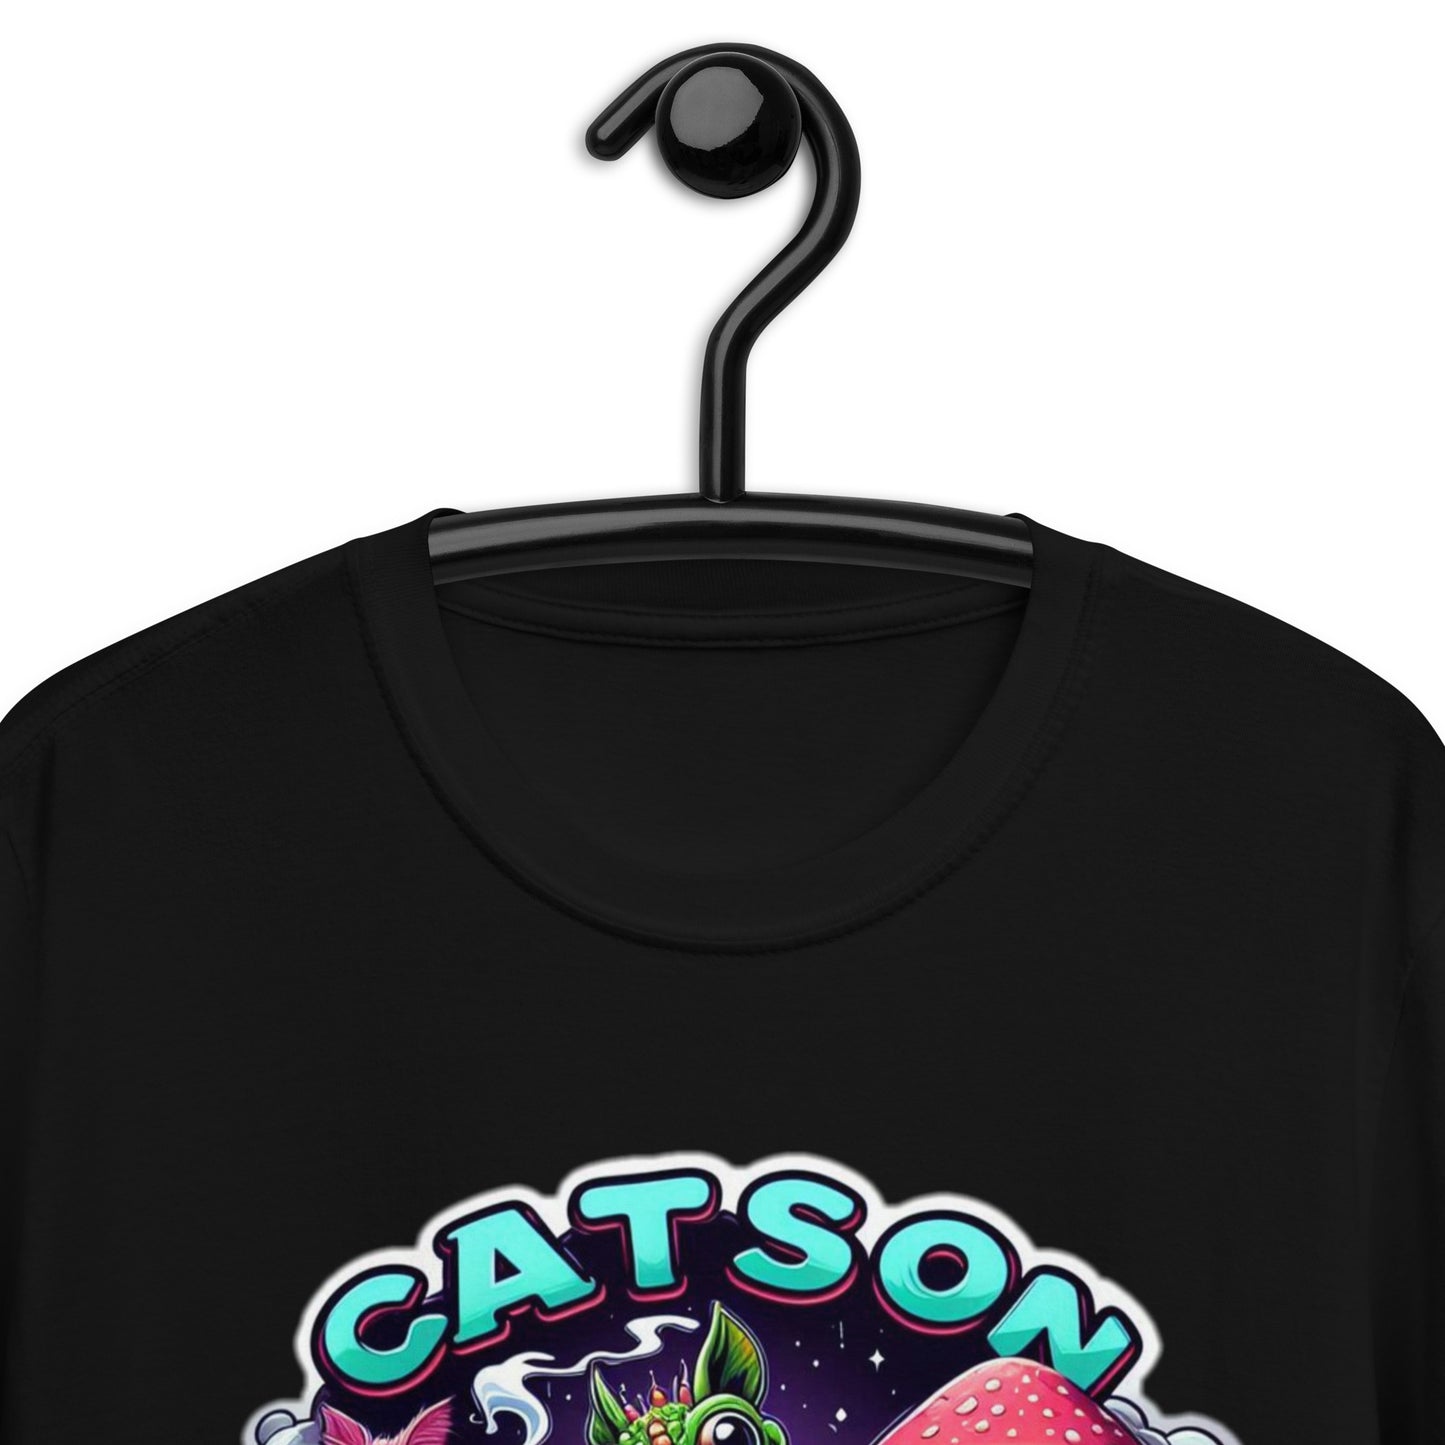 Catsondrugs - Unisex Acid T-Shirt, Ecstasy Edition